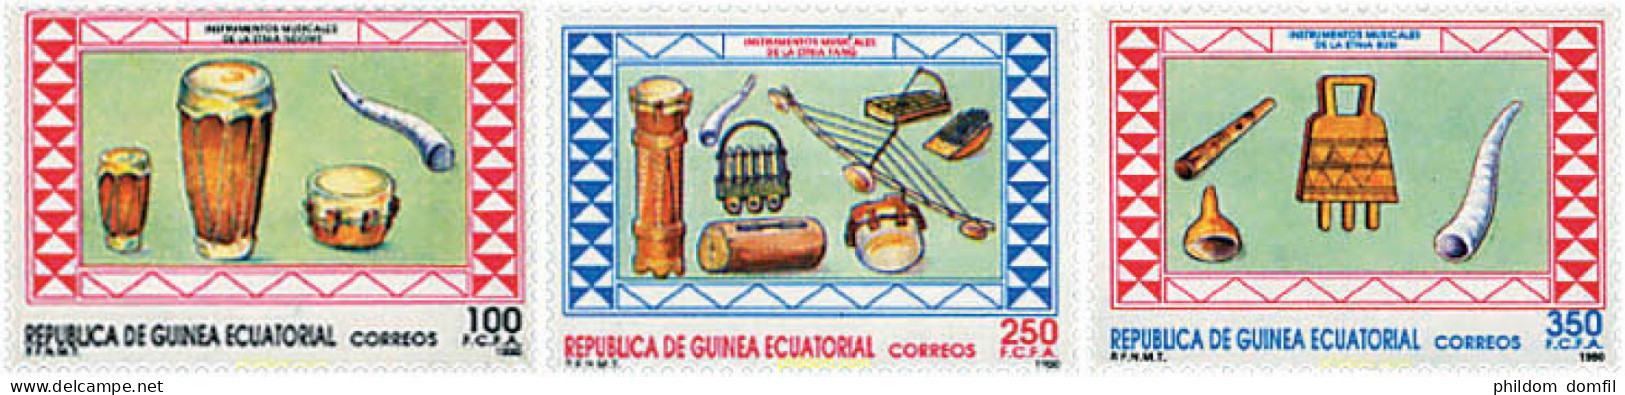 37619 MNH GUINEA ECUATORIAL 1990 INSTRUMENTOS DE MUSICA - Equatorial Guinea